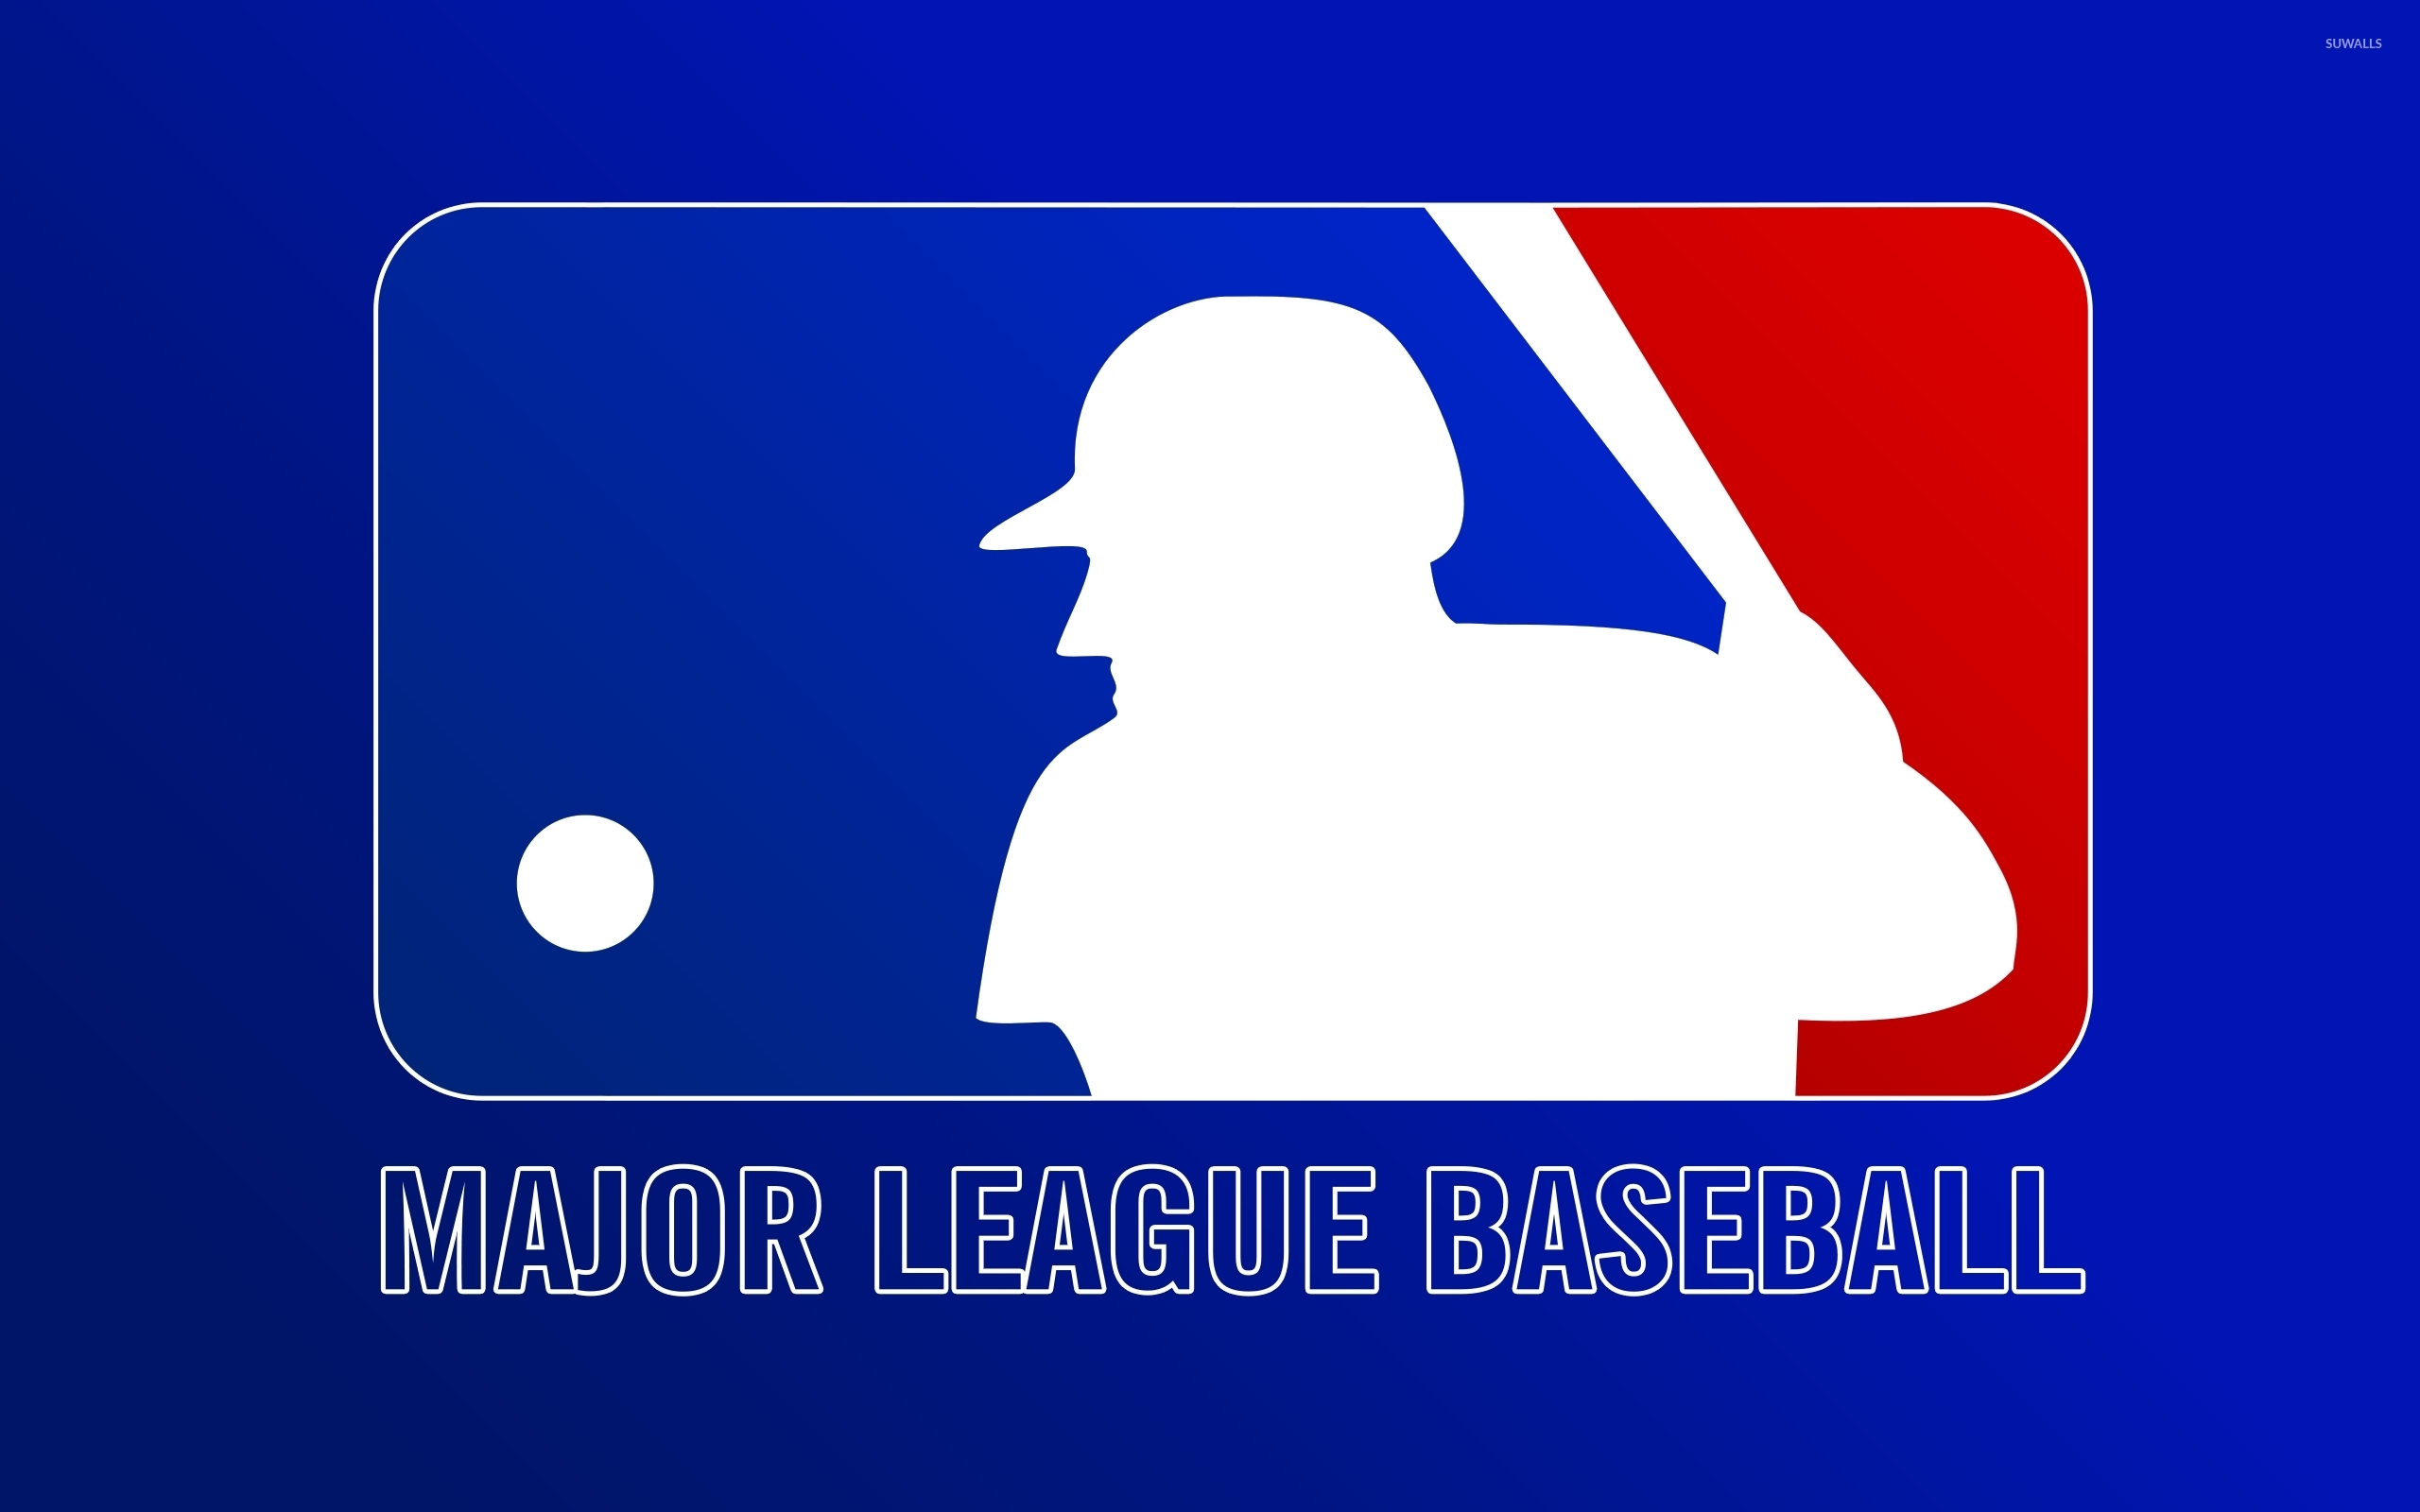 Major league baseball photo